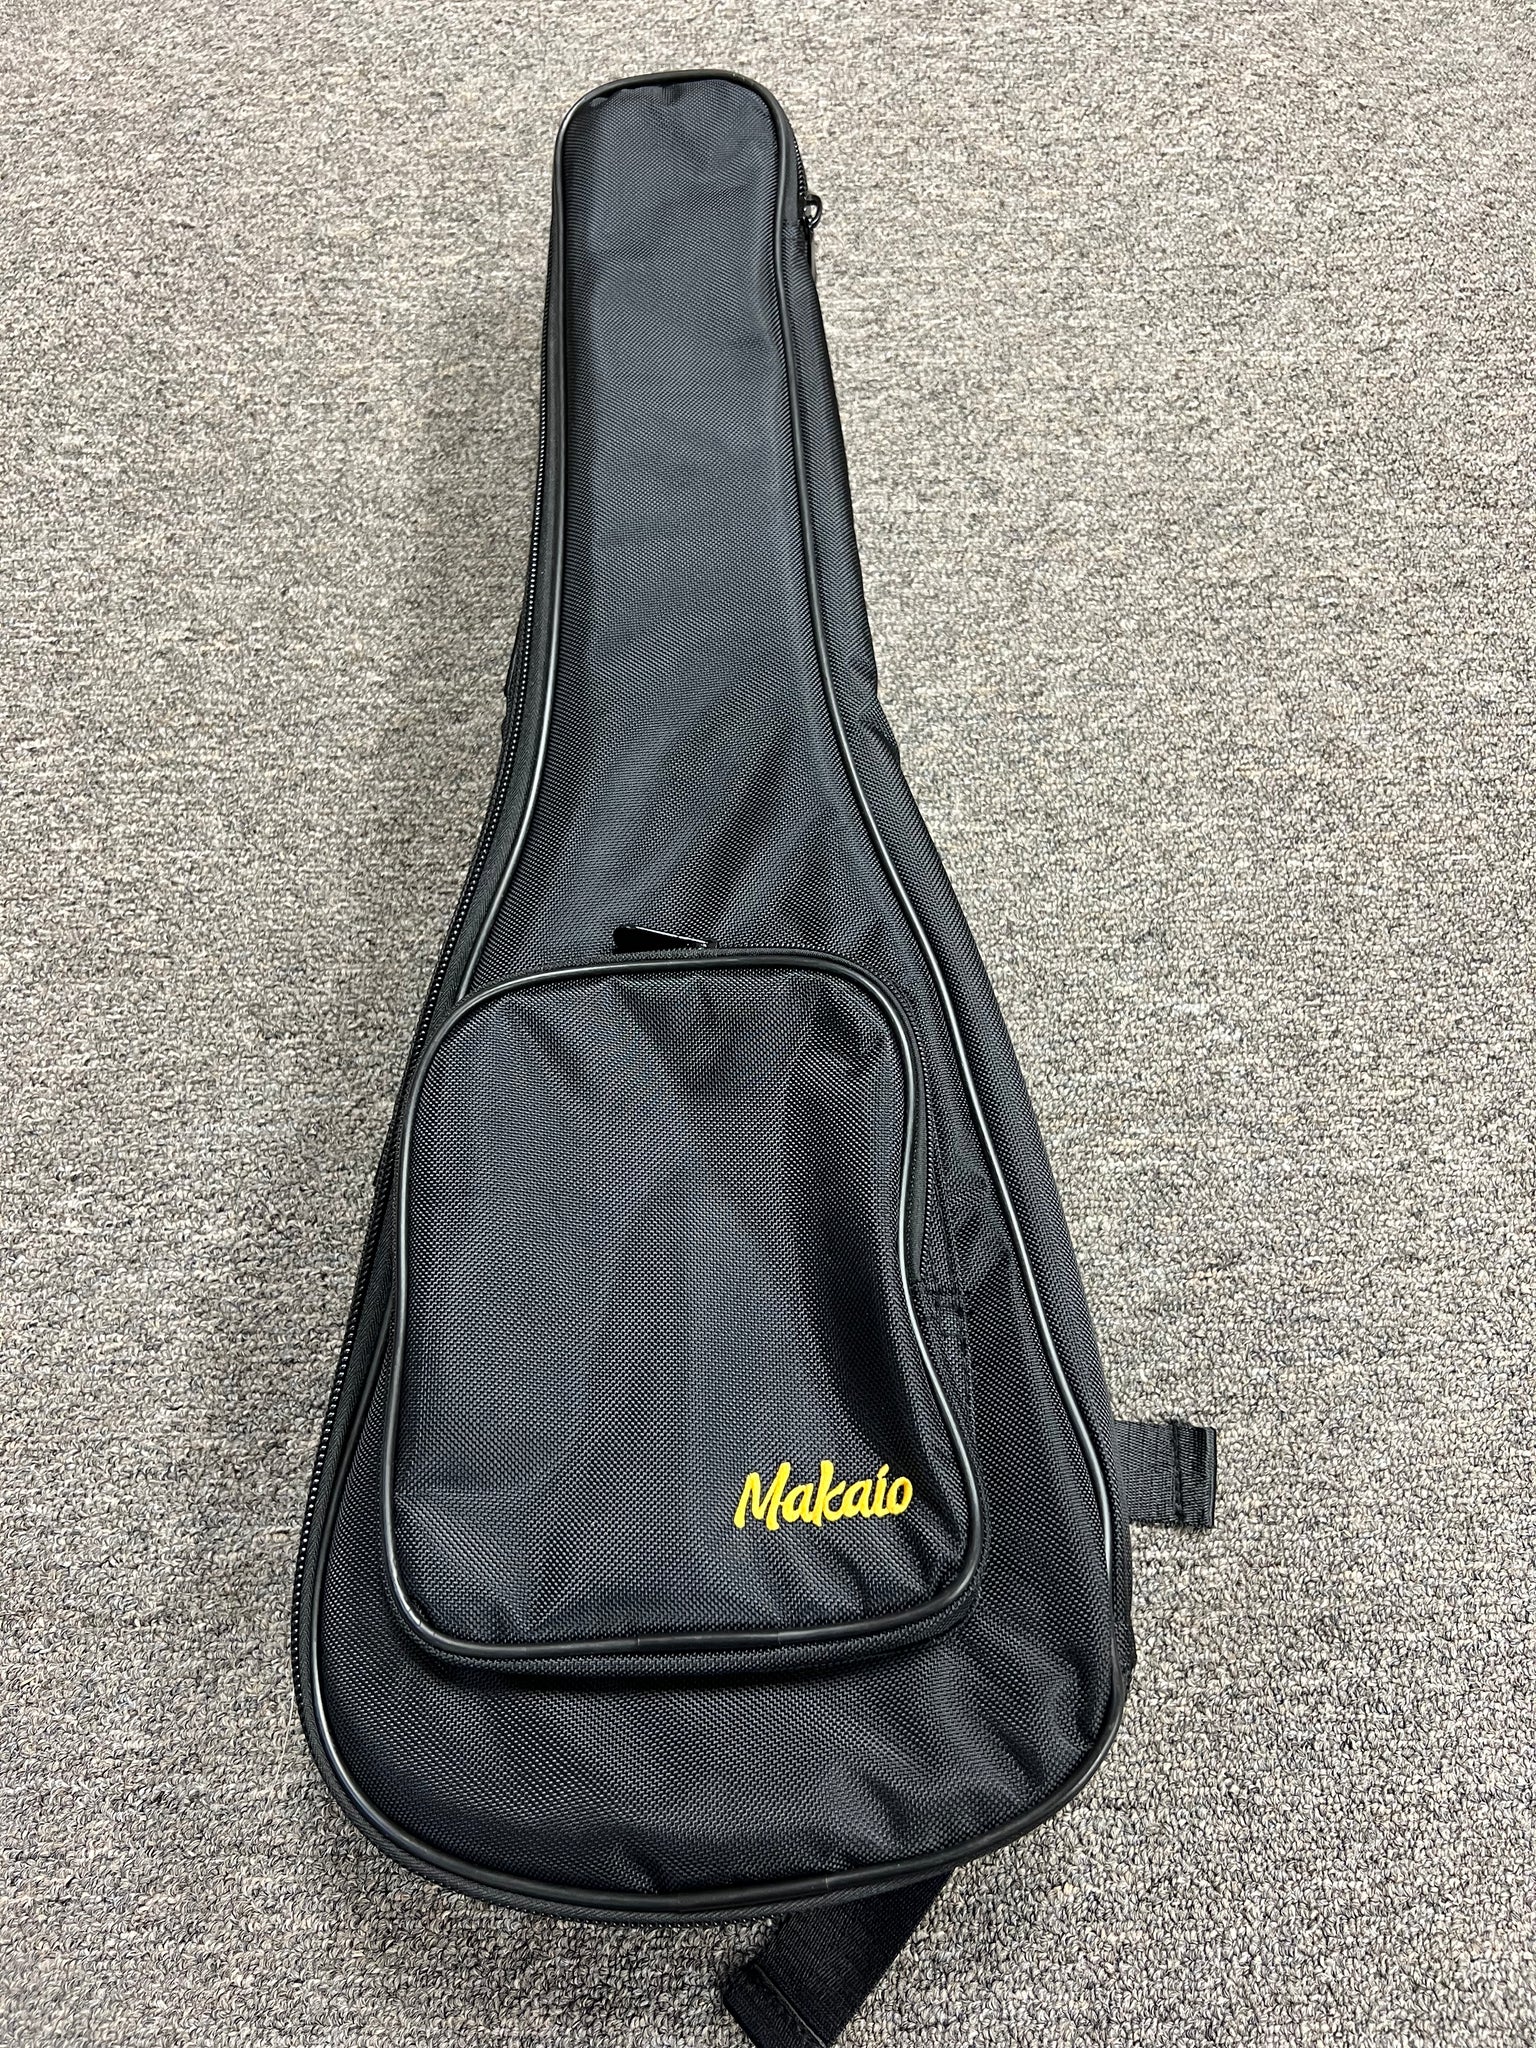 Makaio Concert Ukulele Gig Bag Black w/Shoulder Straps and Pocket - Aloha City Ukes